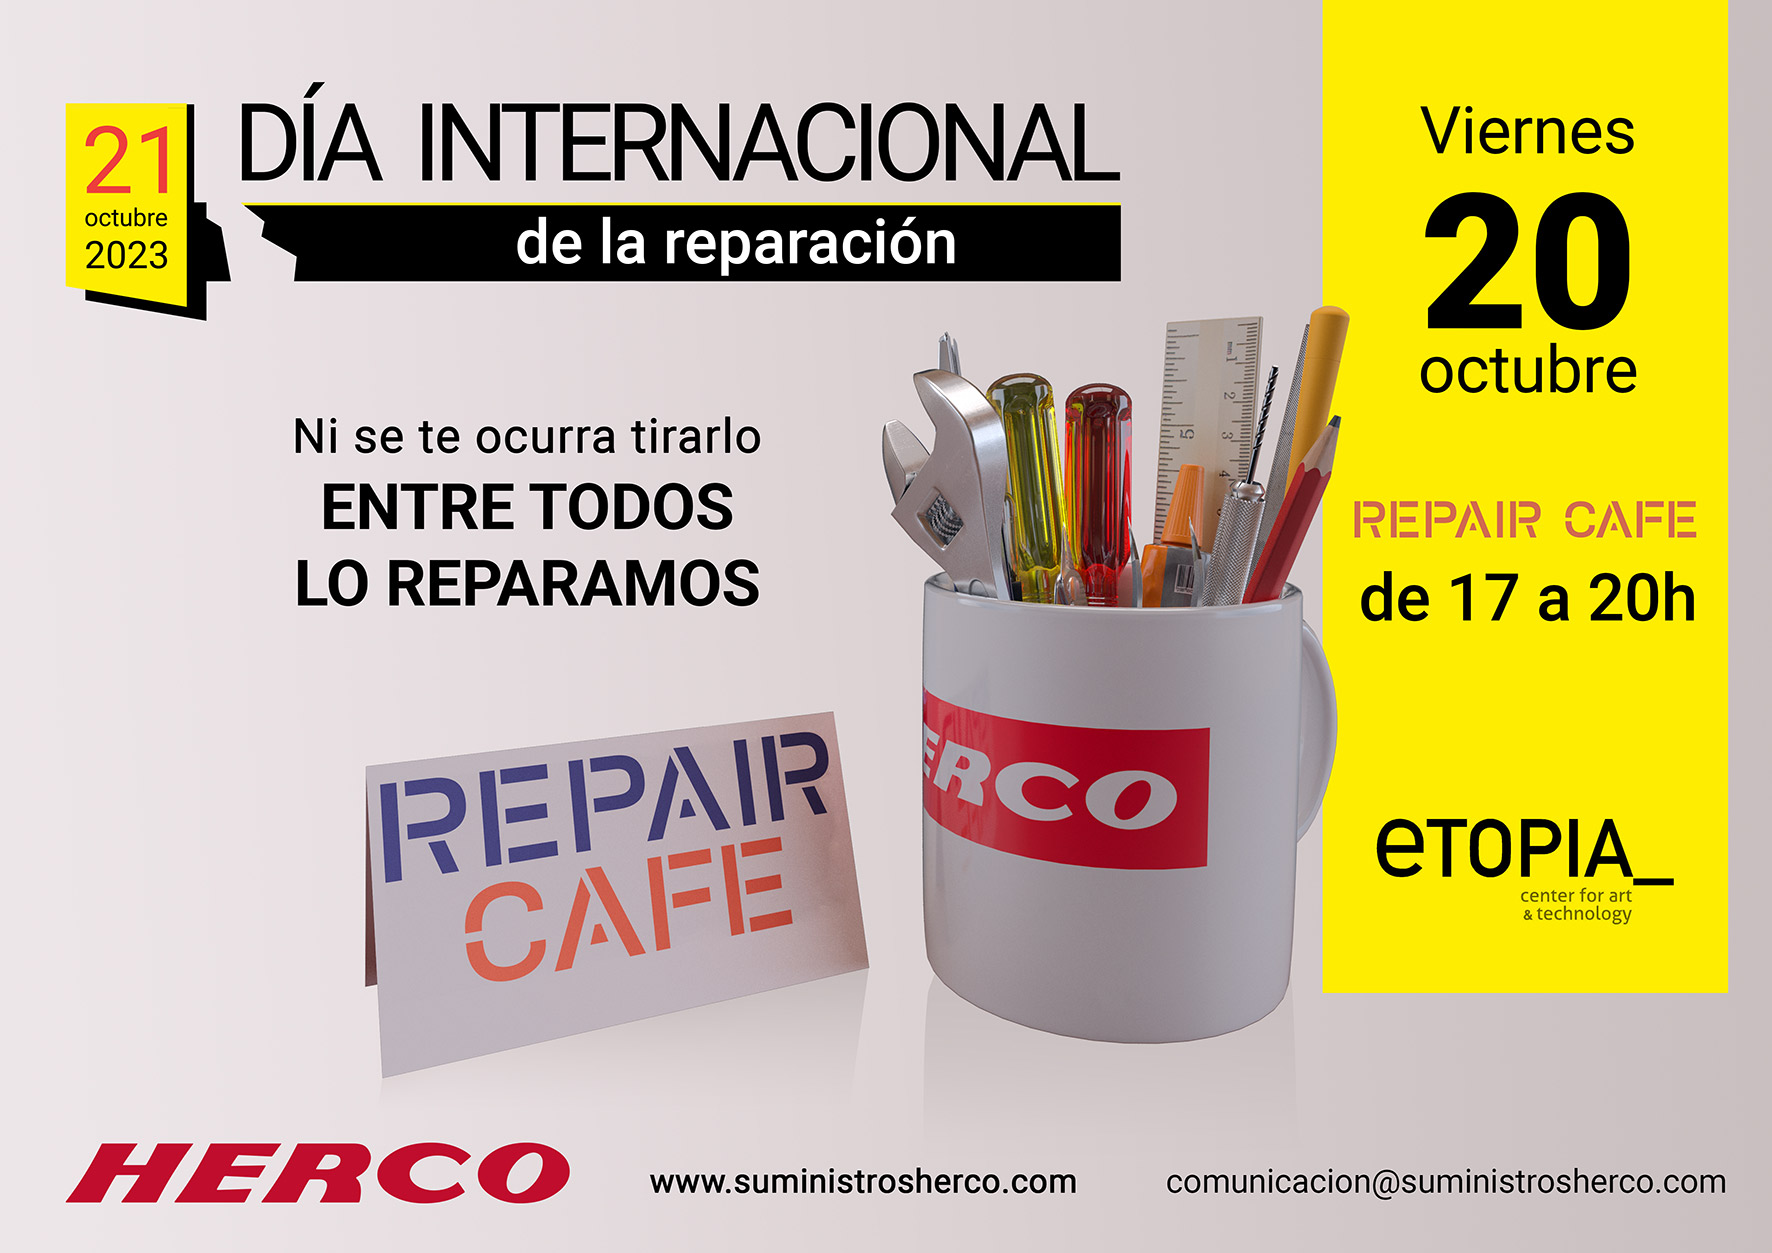 Repair Café especial Día Internacional de la Reparación